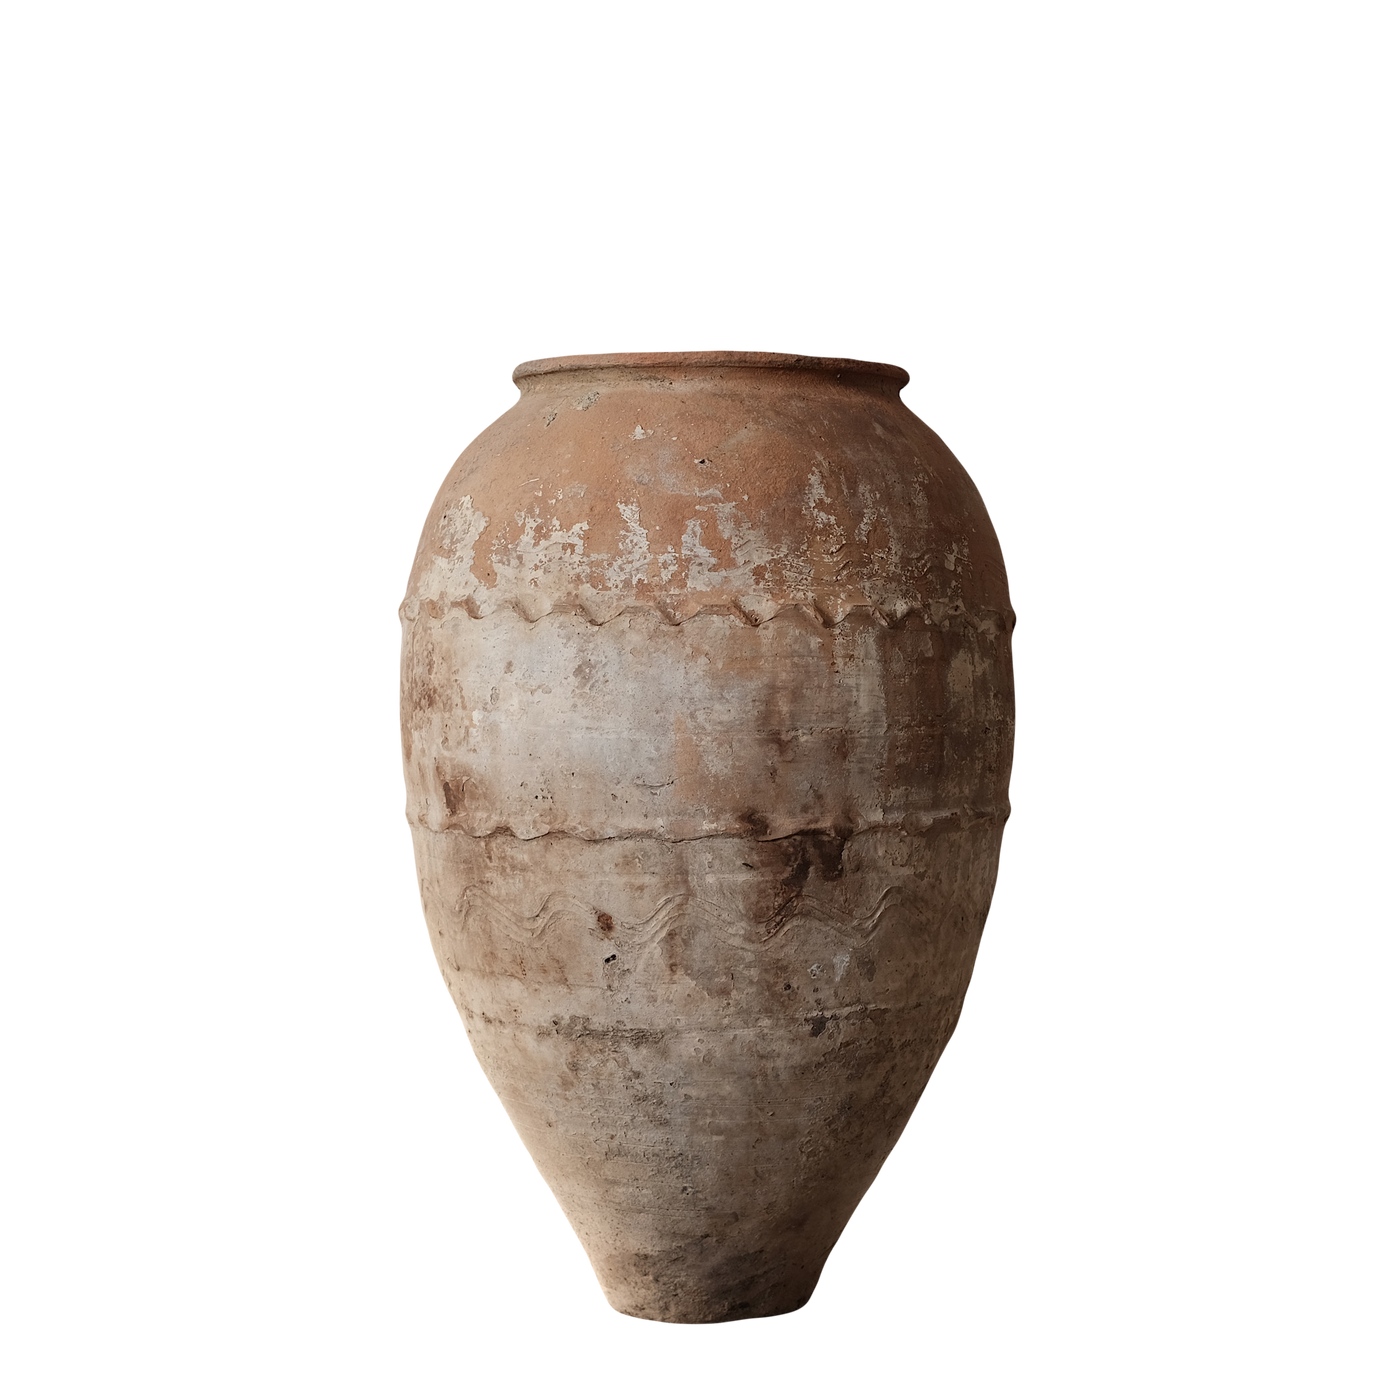 Zeytin - Ancienne jarre à huile turque en terre cuite